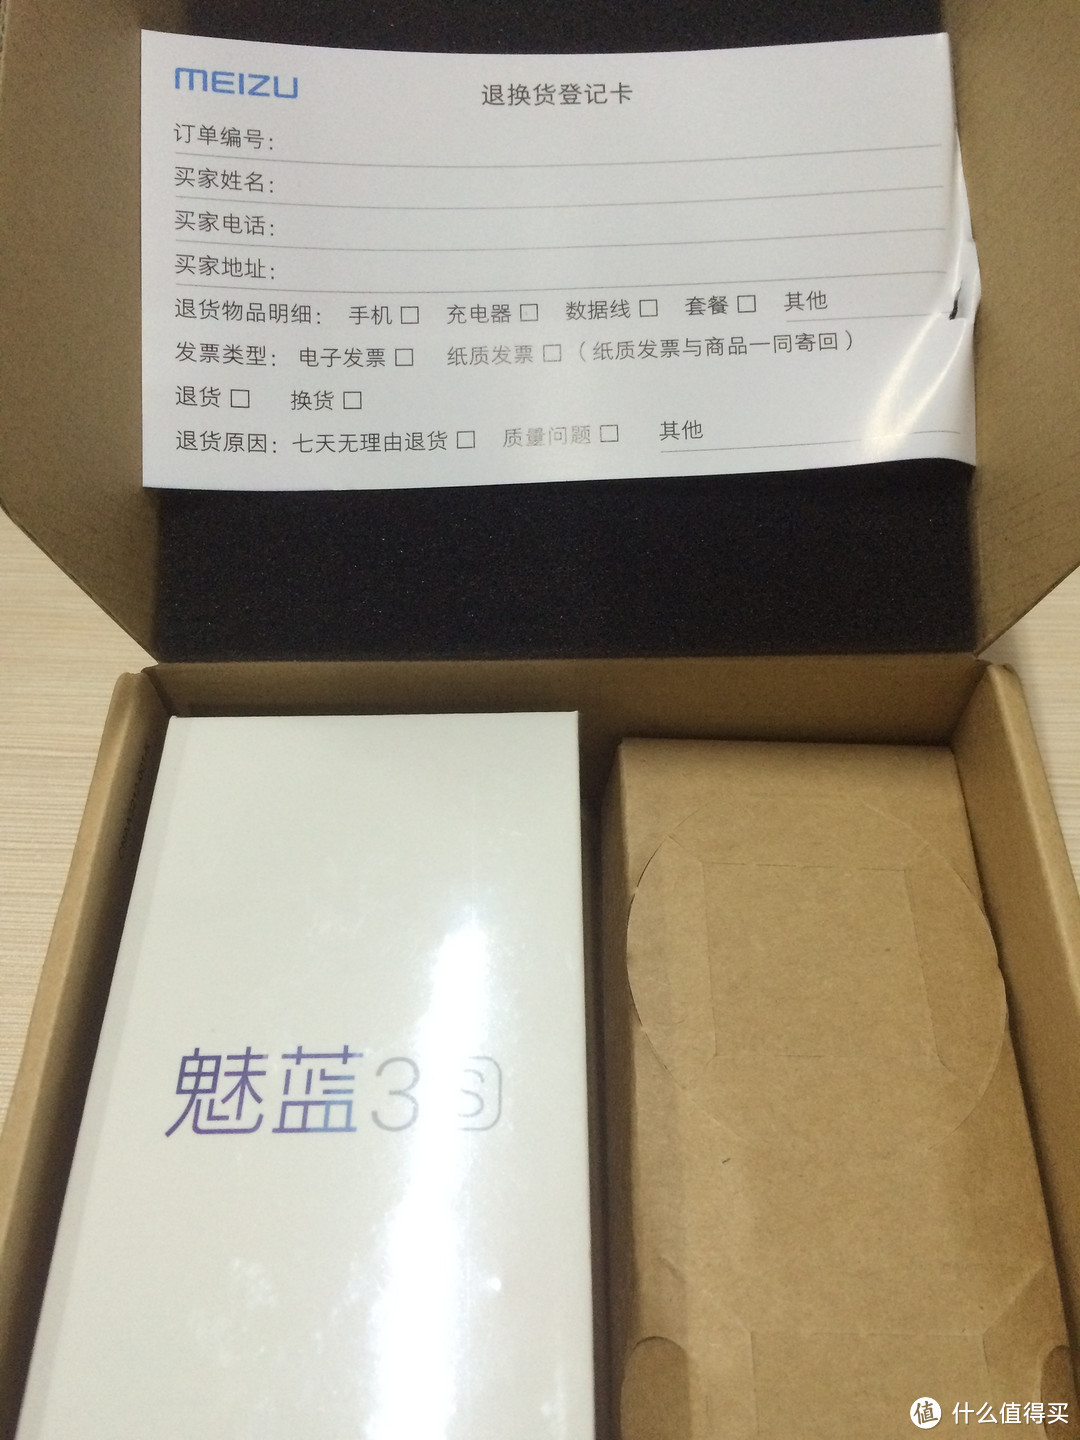 MEIZU 魅族 魅蓝3S 16GB 全网通智能手机 开箱